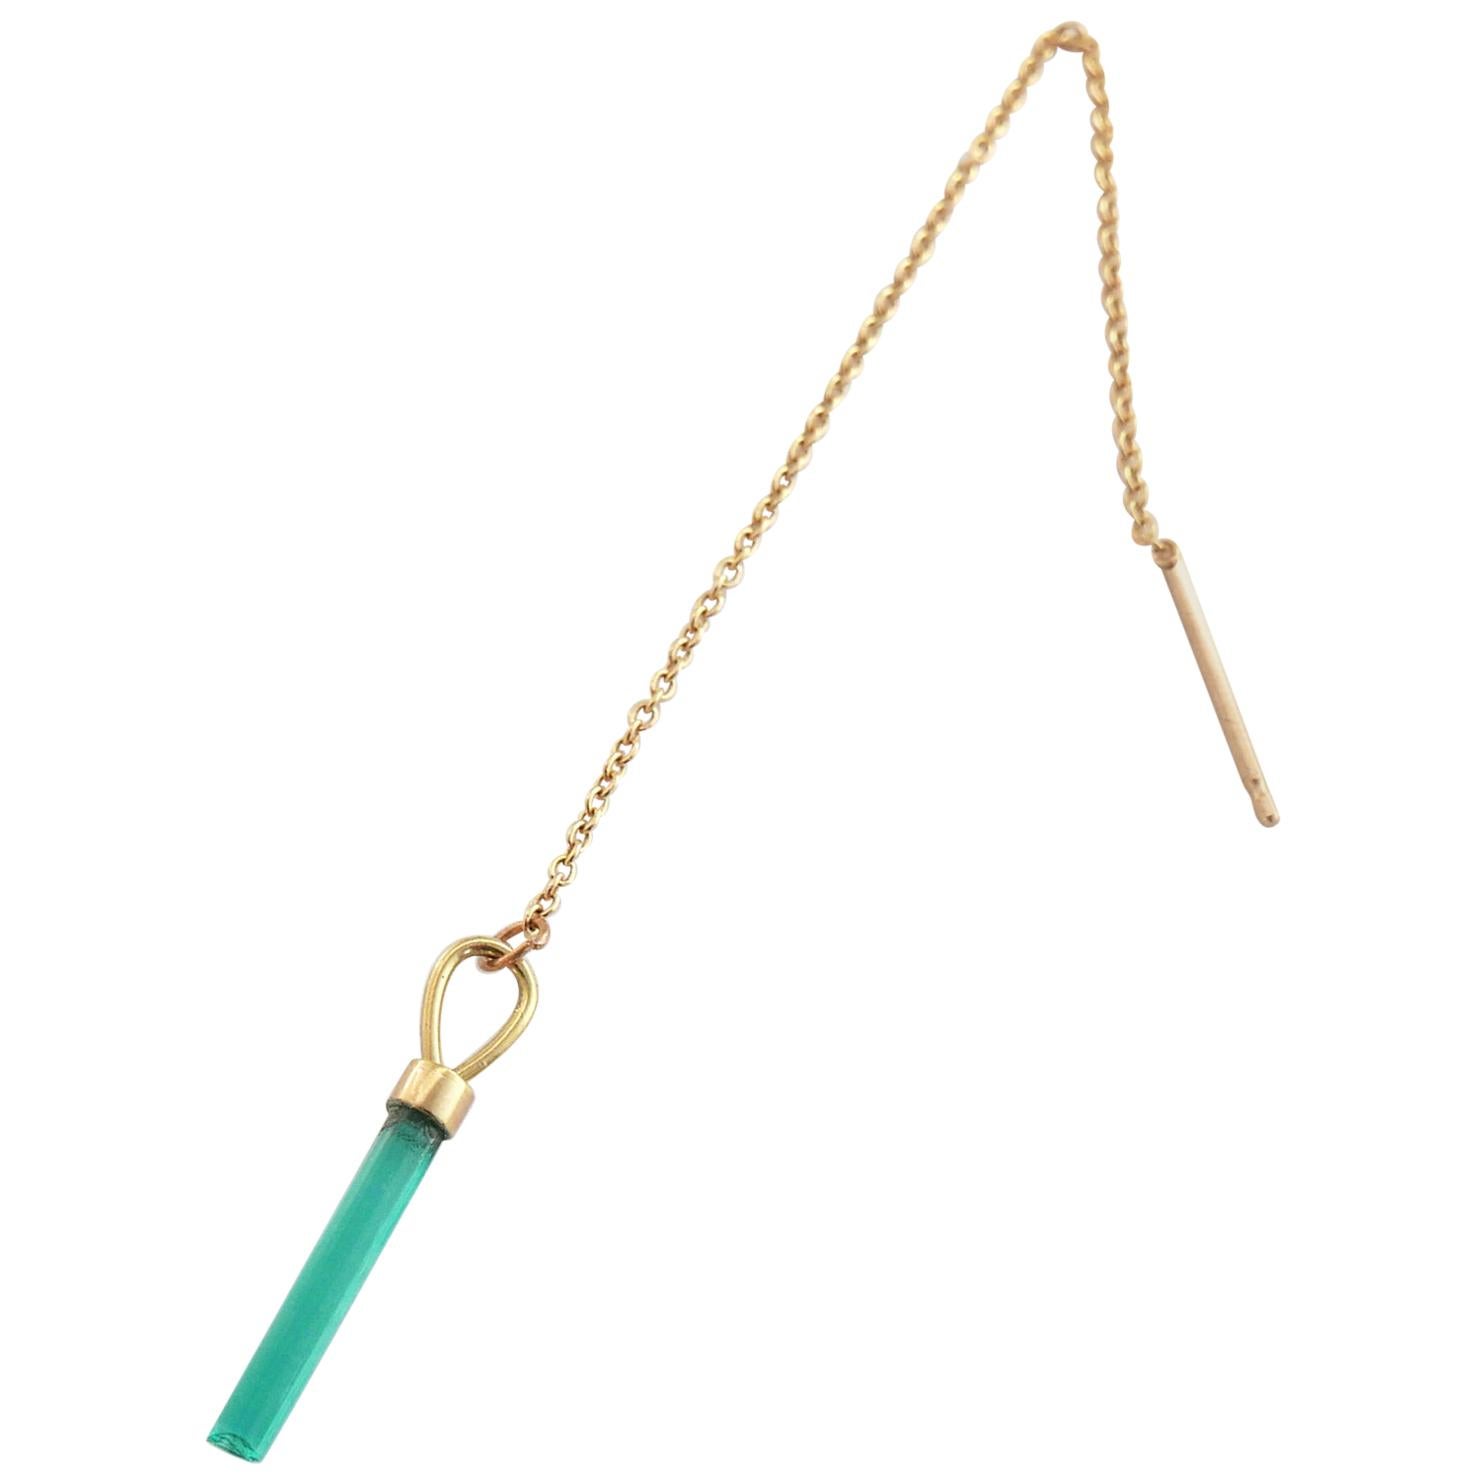 Emerald Chain Earring in 18 Karat Gold by Allison Bryan